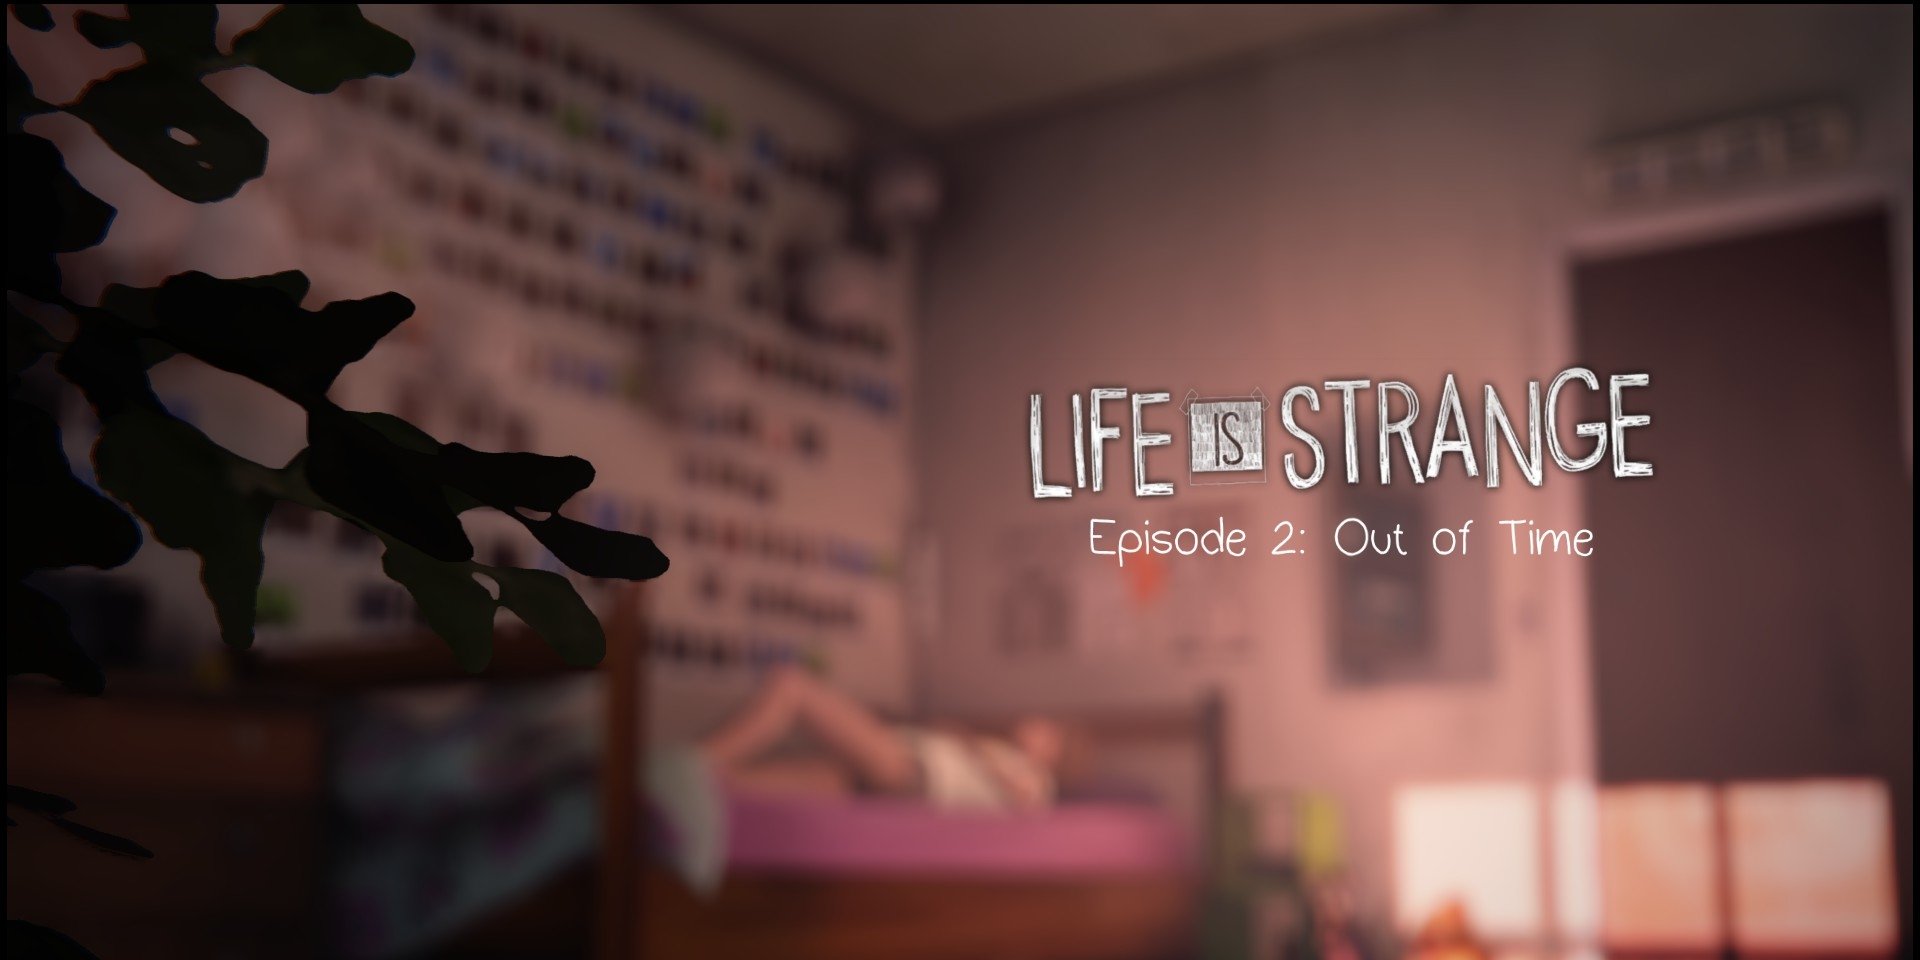 Entenda a história dos jogos da série Life is Strange